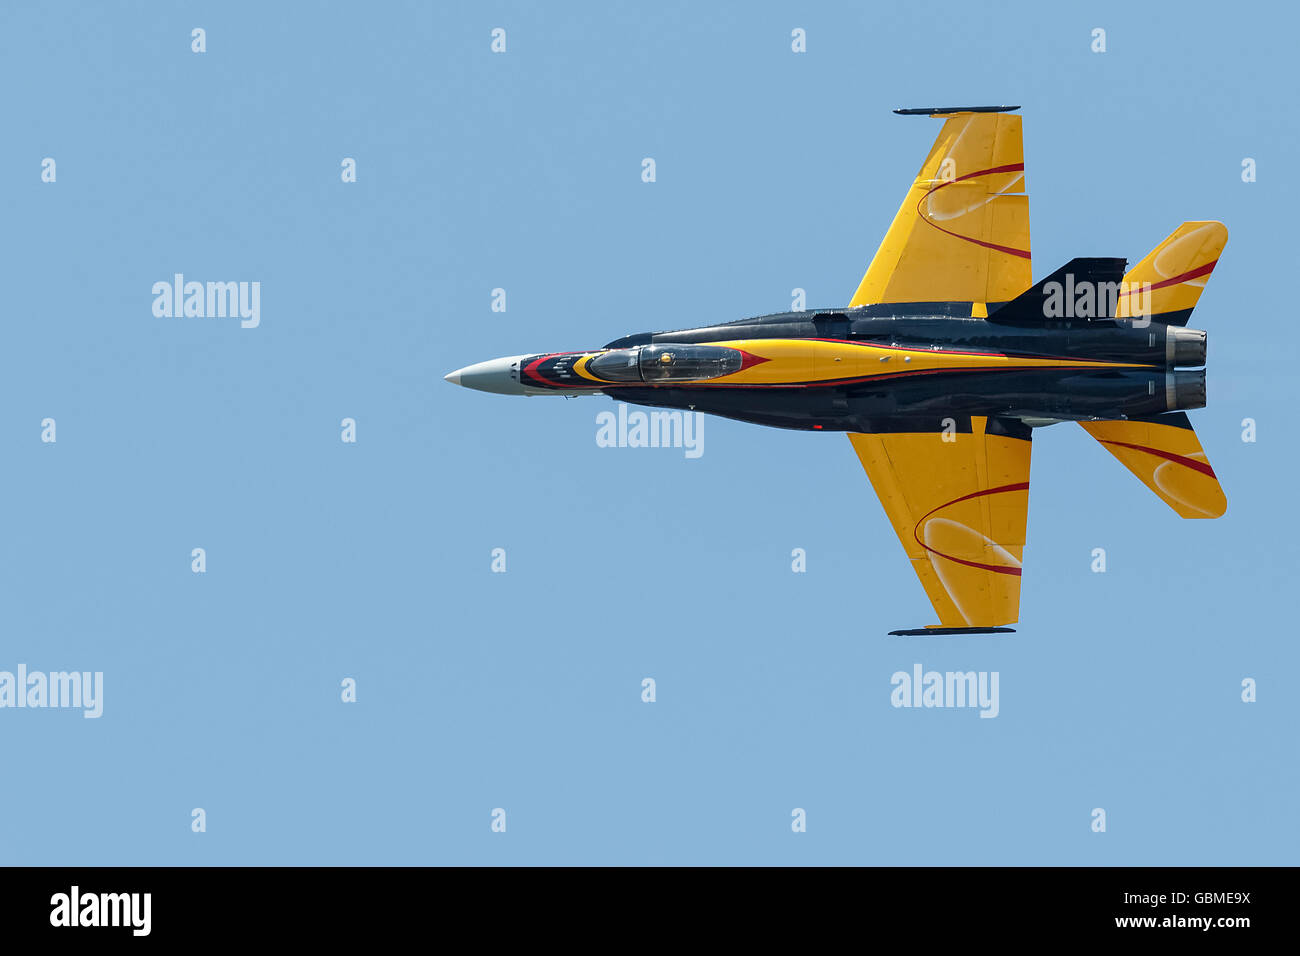 Un chasseur à réaction F-18 Hornet en vol Banque D'Images